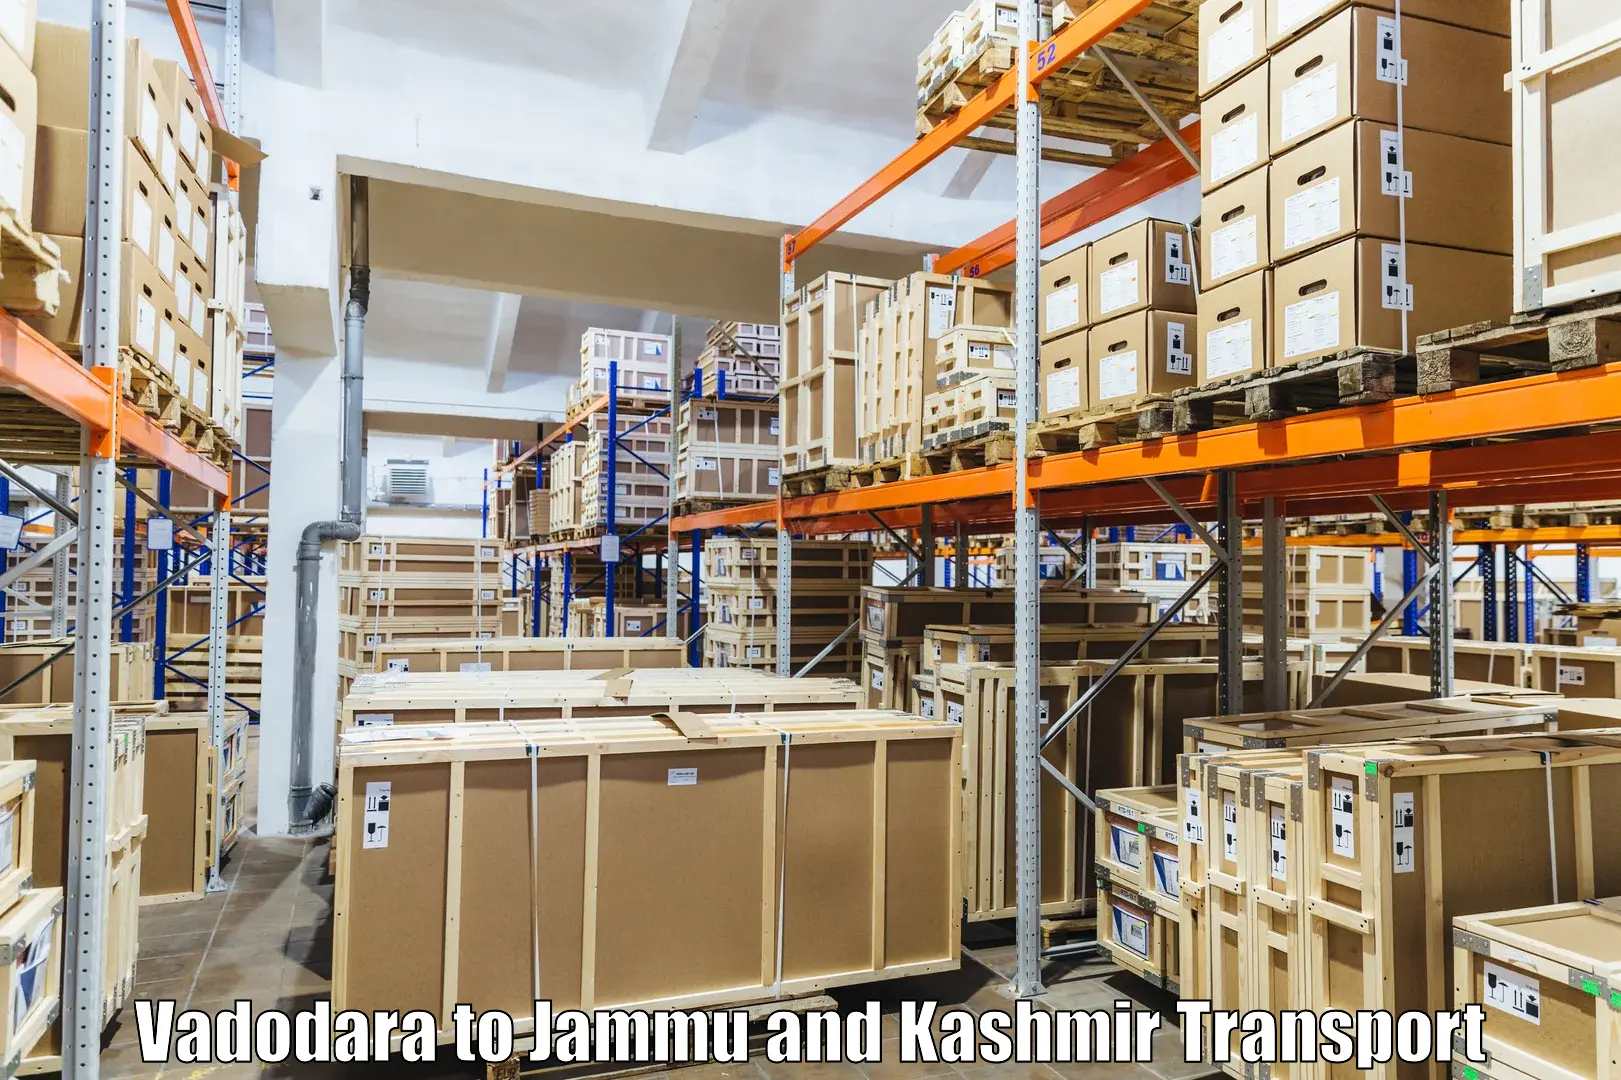 Online transport booking Vadodara to Jammu